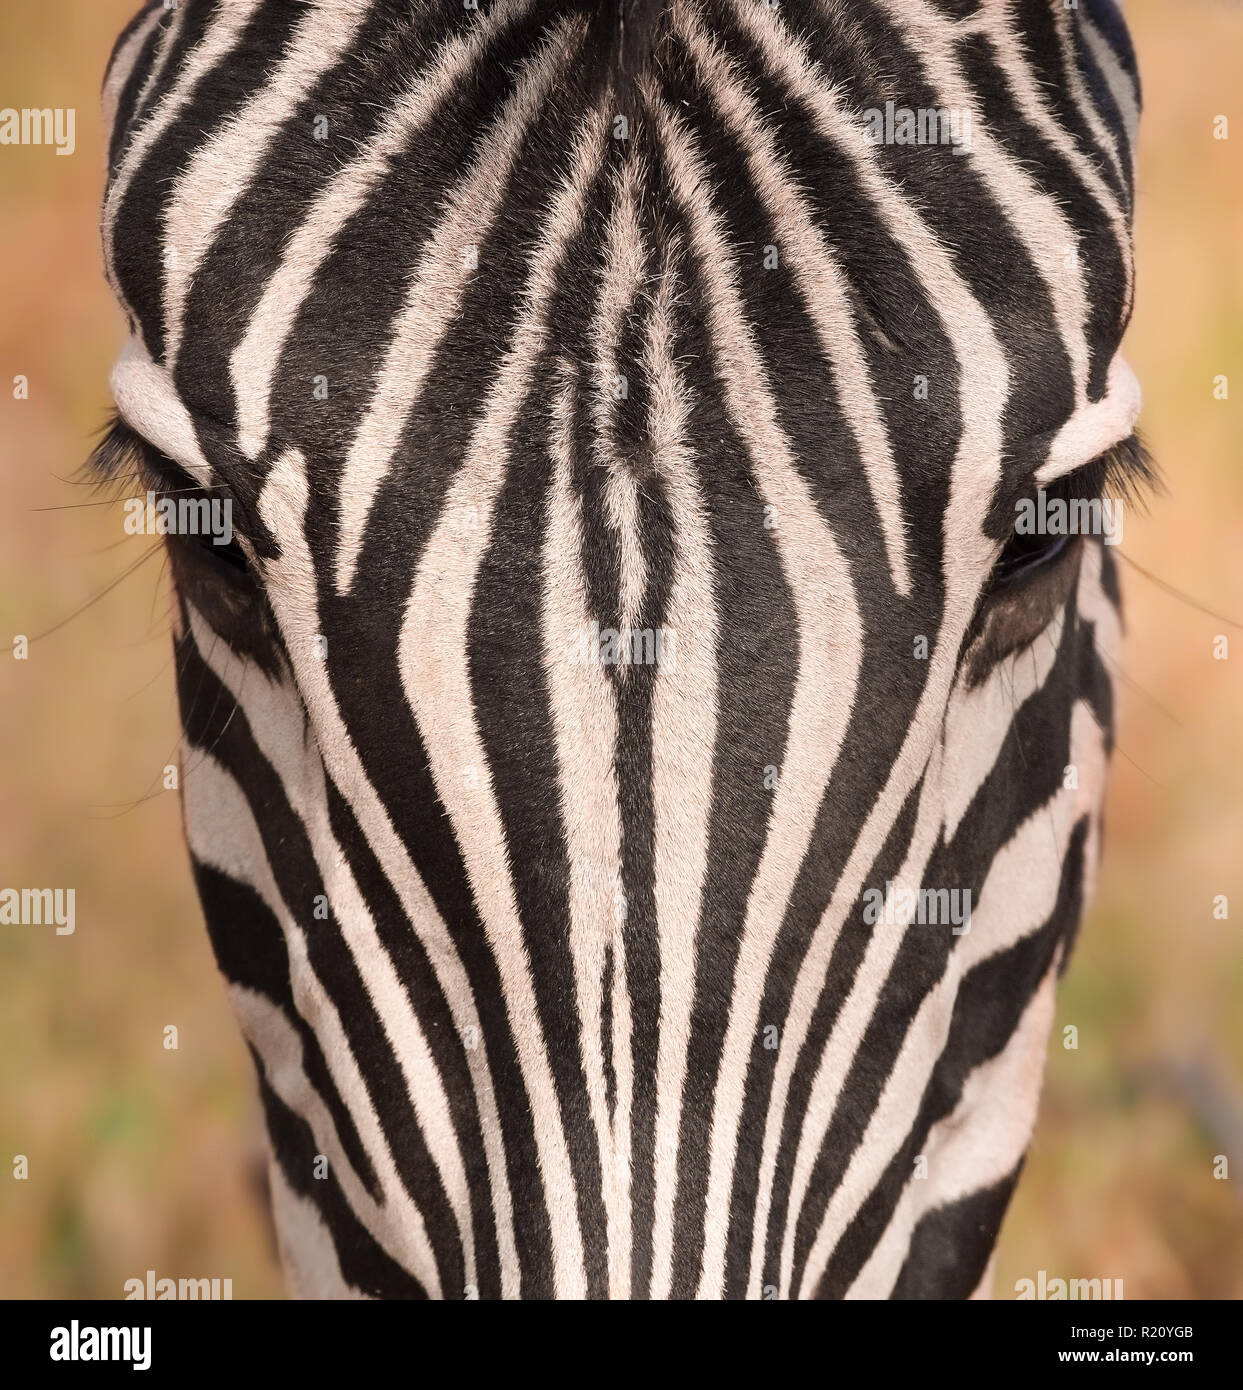 Plain zebra Stock Photo